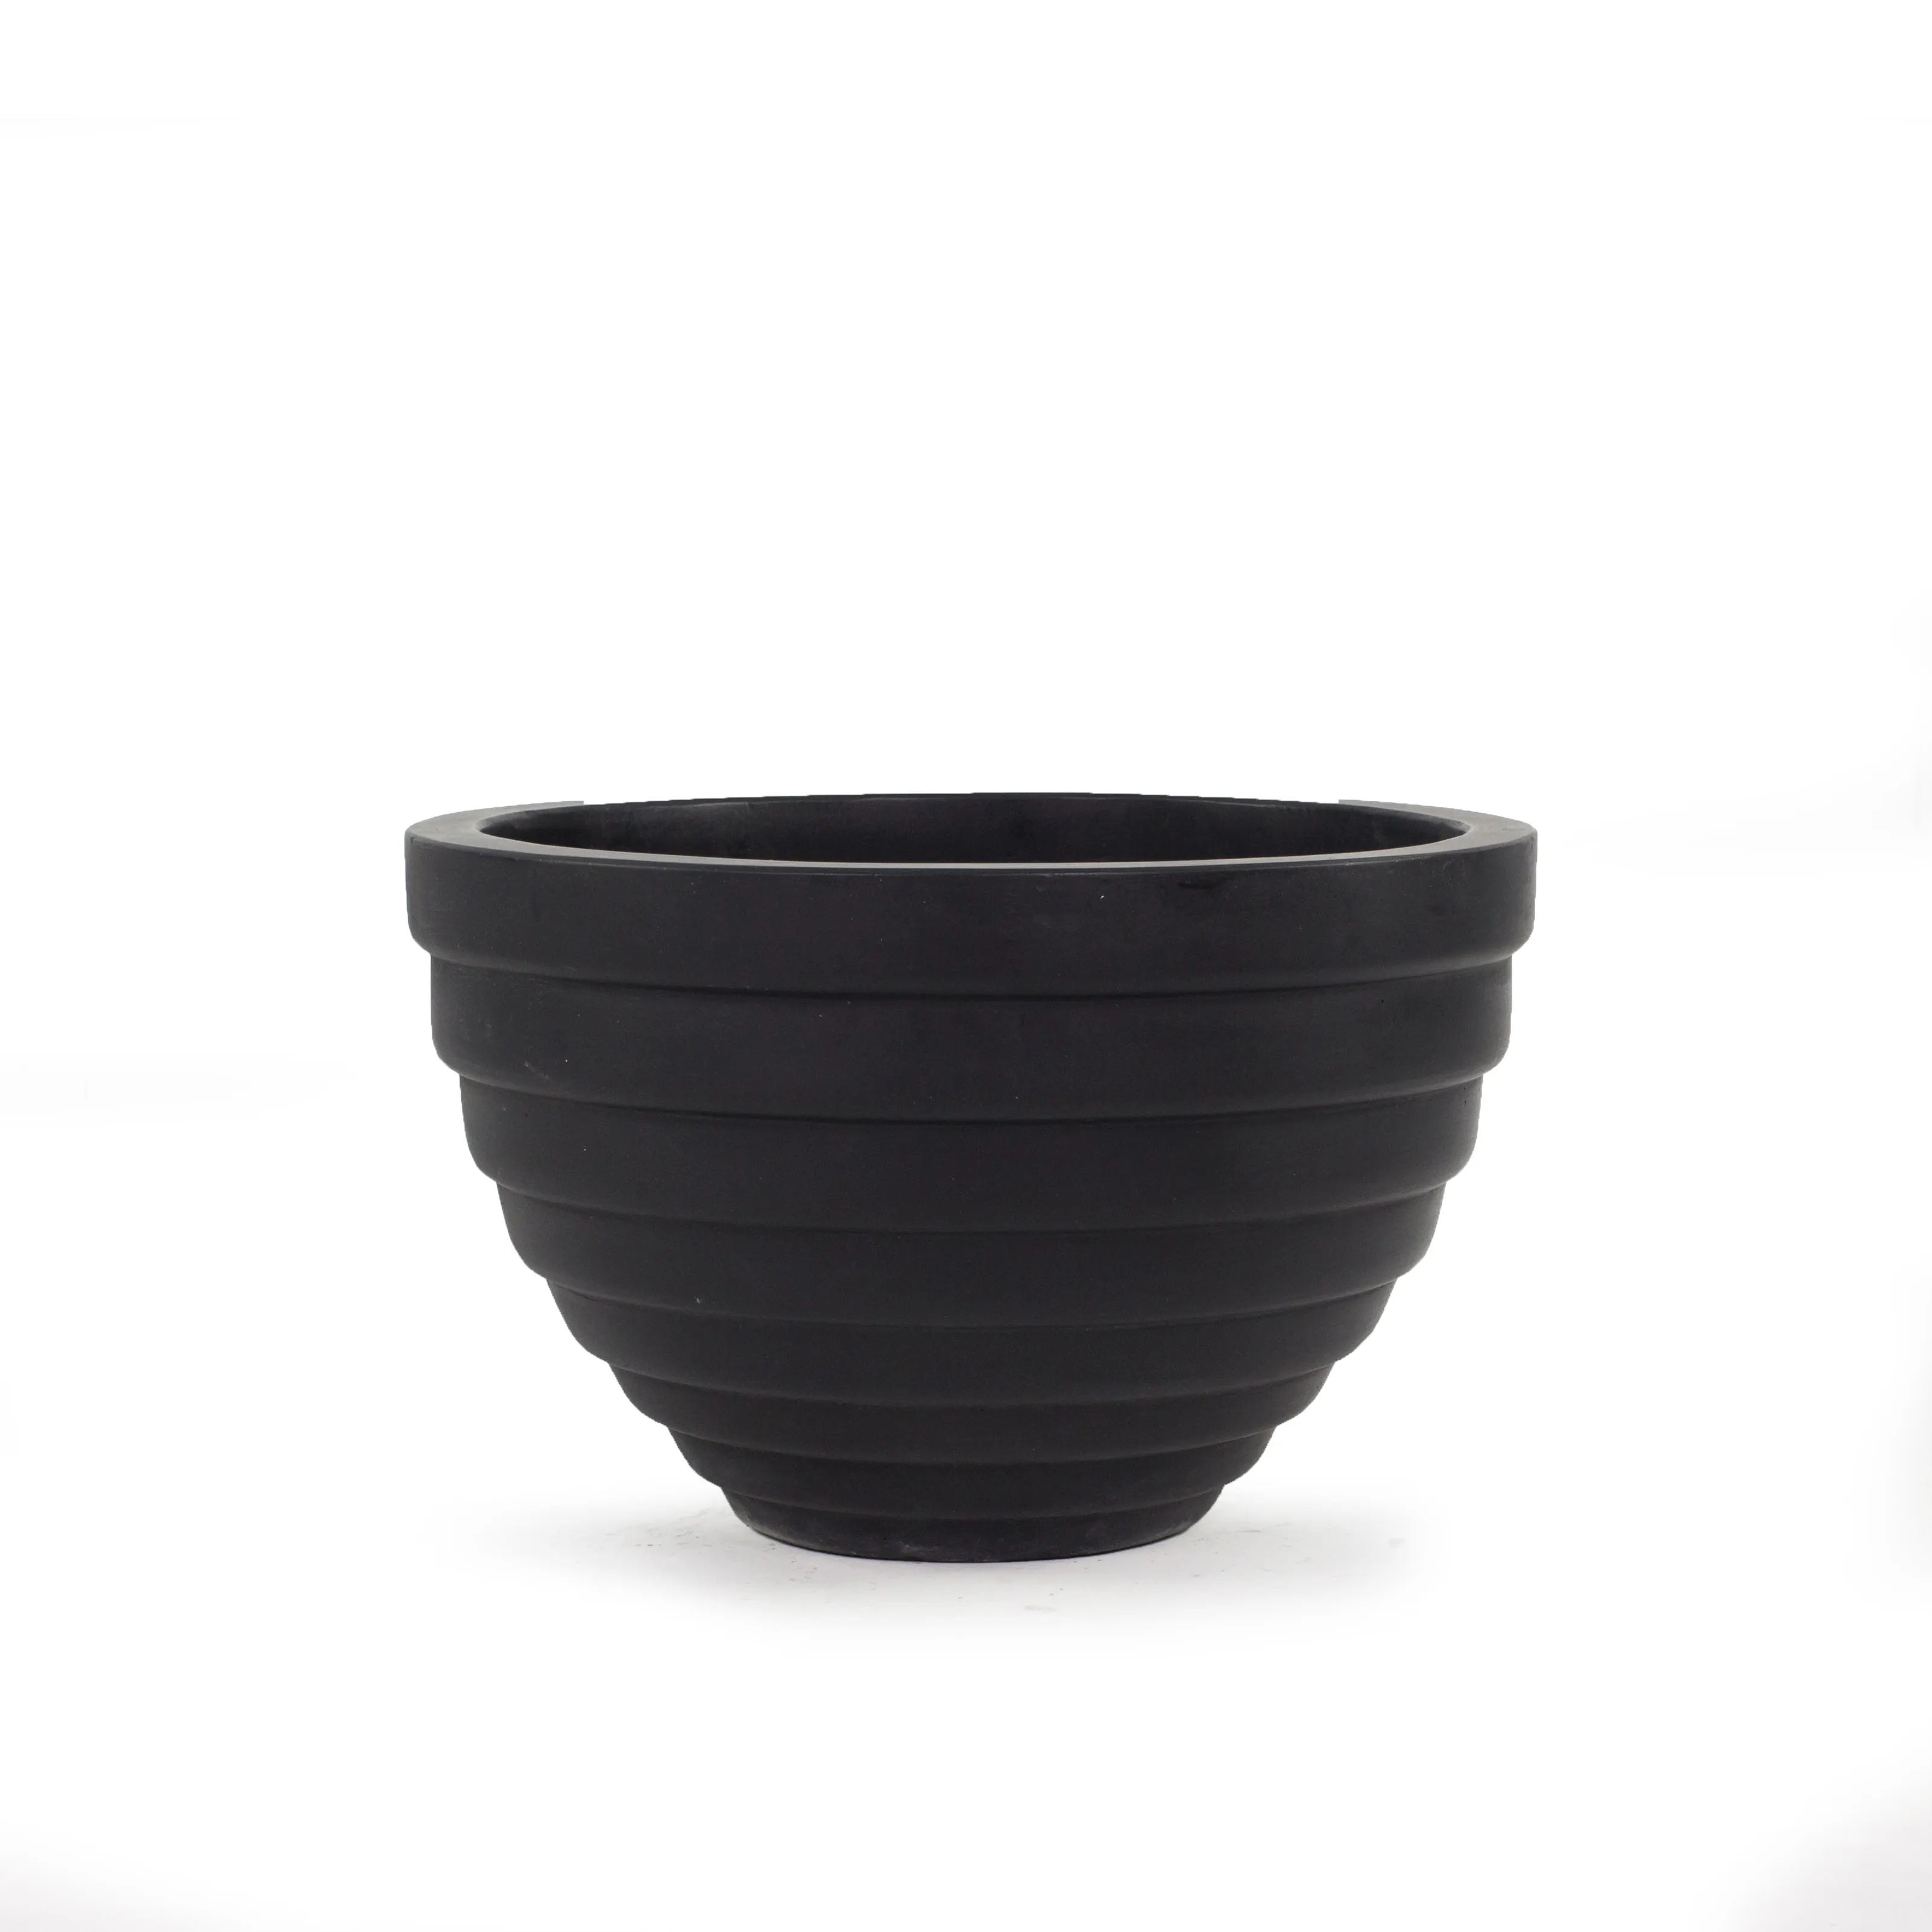 Concrete plant flower pots low bowl modern design shape black color decorative plant wholesale price